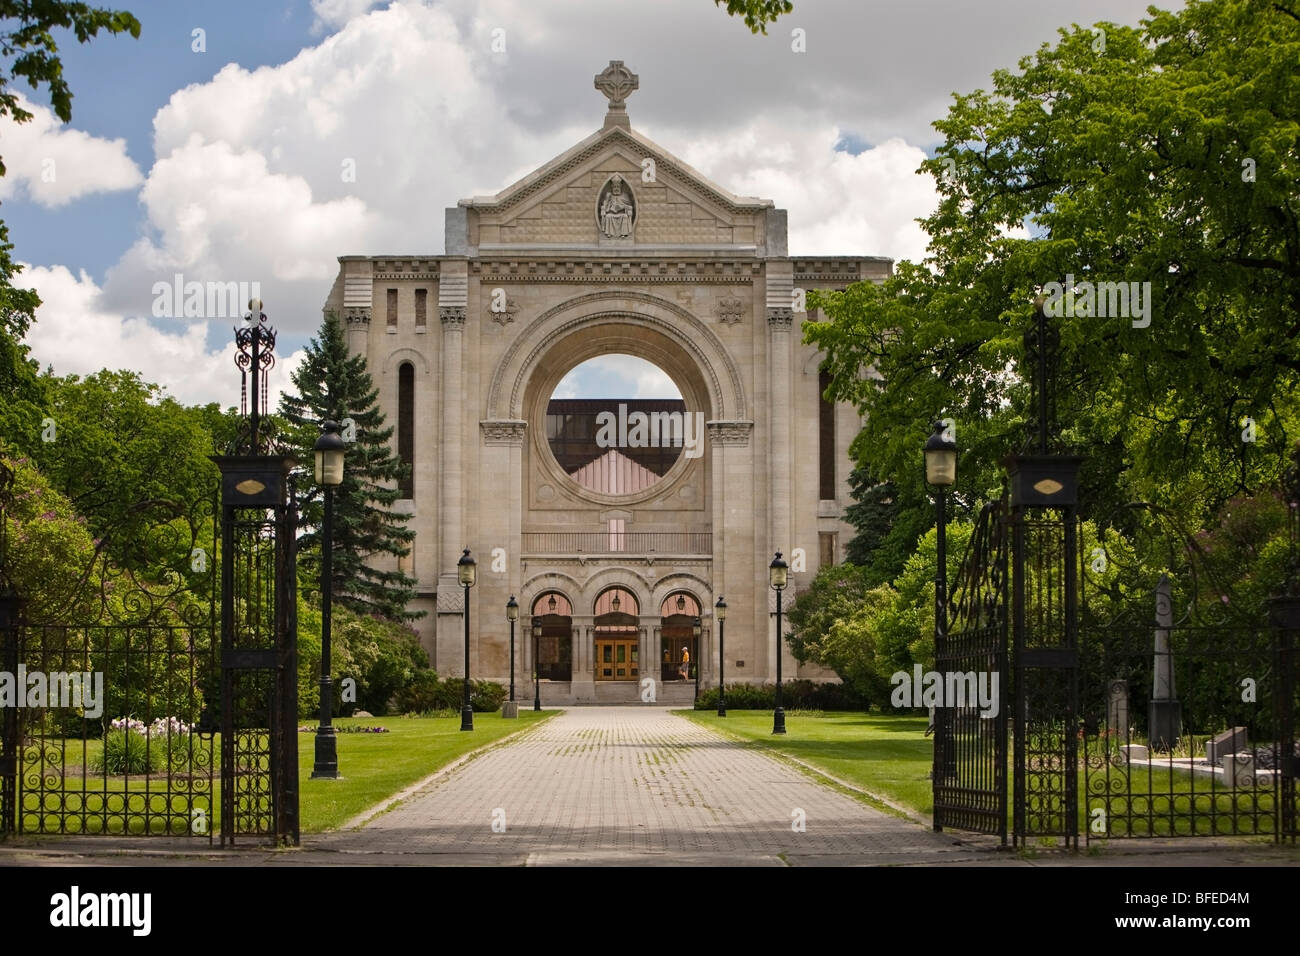 Façade de la cathédrale de Saint-Boniface, dans le vieux quartier français de Saint-Boniface, Winnipeg, Manitoba, Canada Banque D'Images